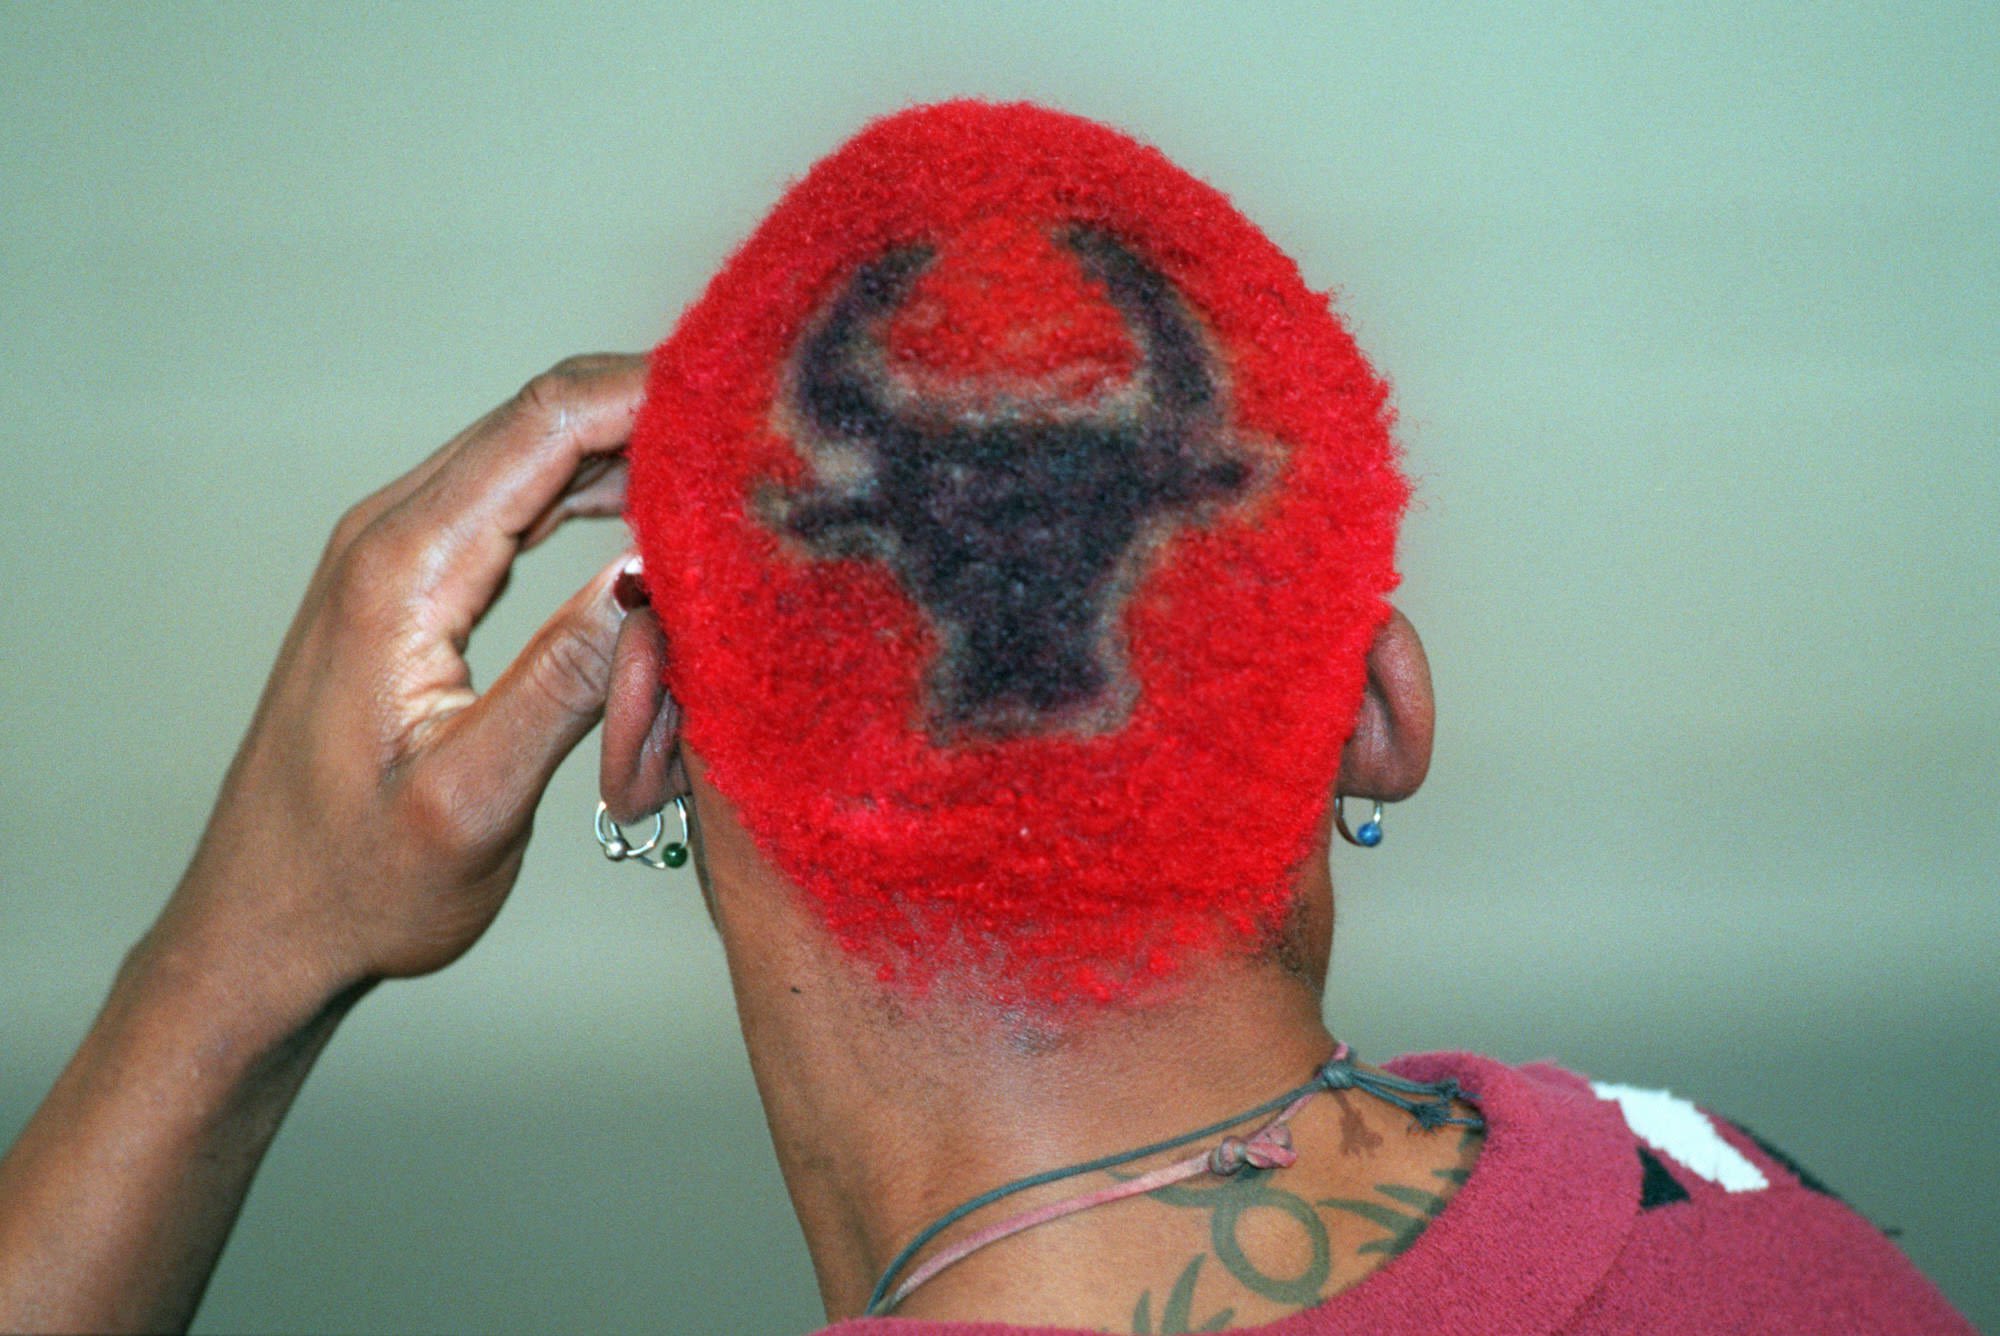 Dennis Rodman: Hoops, hair and tattoos | CNN